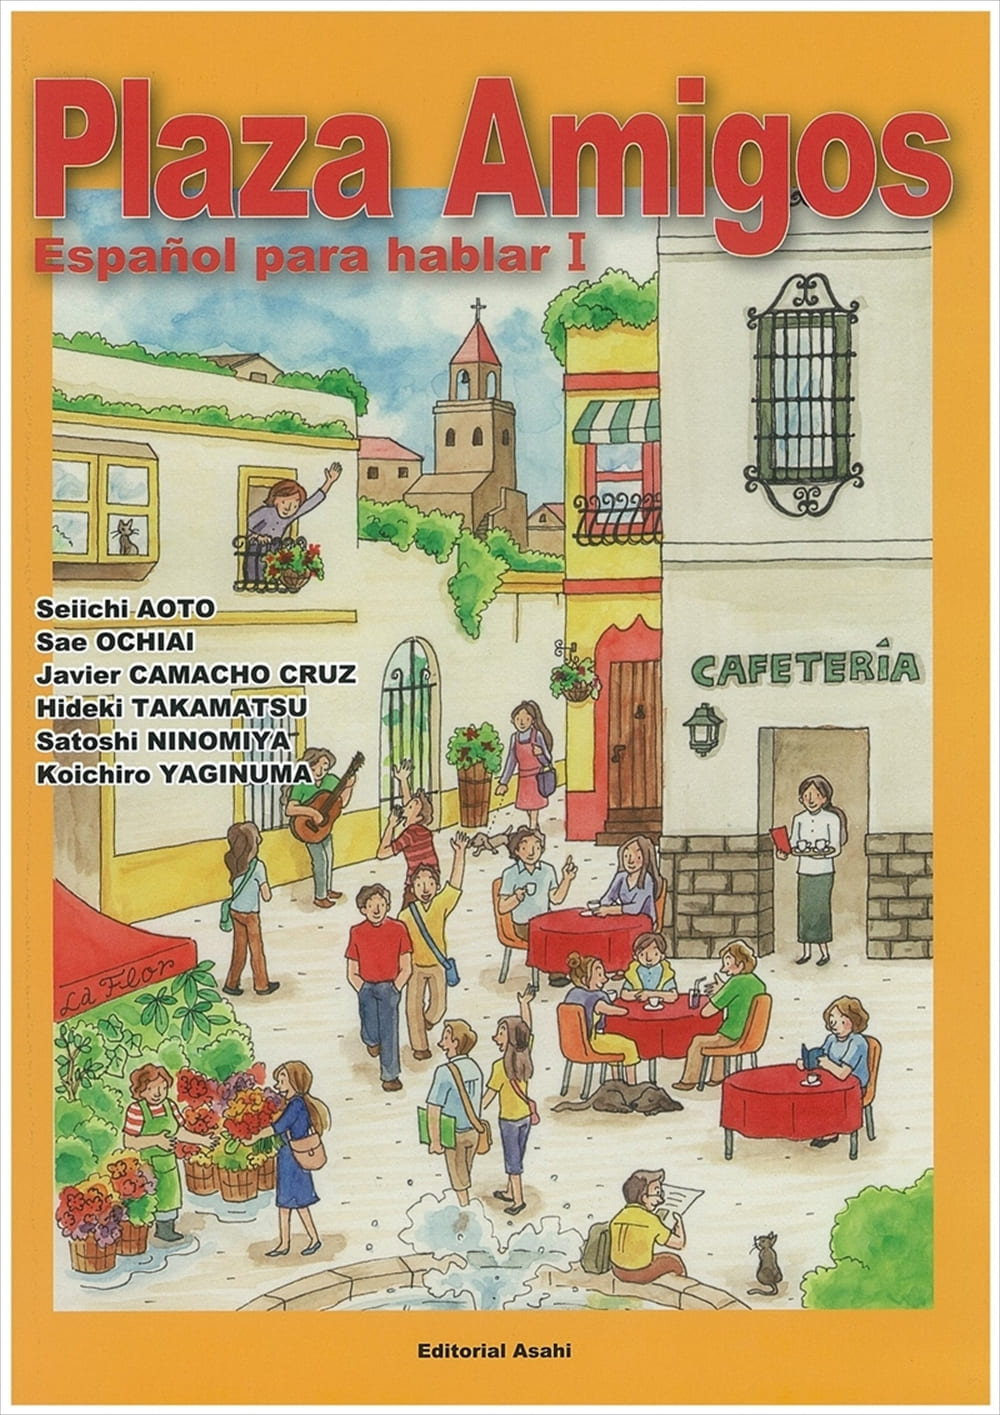 プラサ アミーゴス スペイン語で話そうi 教科書 スペイン語 朝日出版社